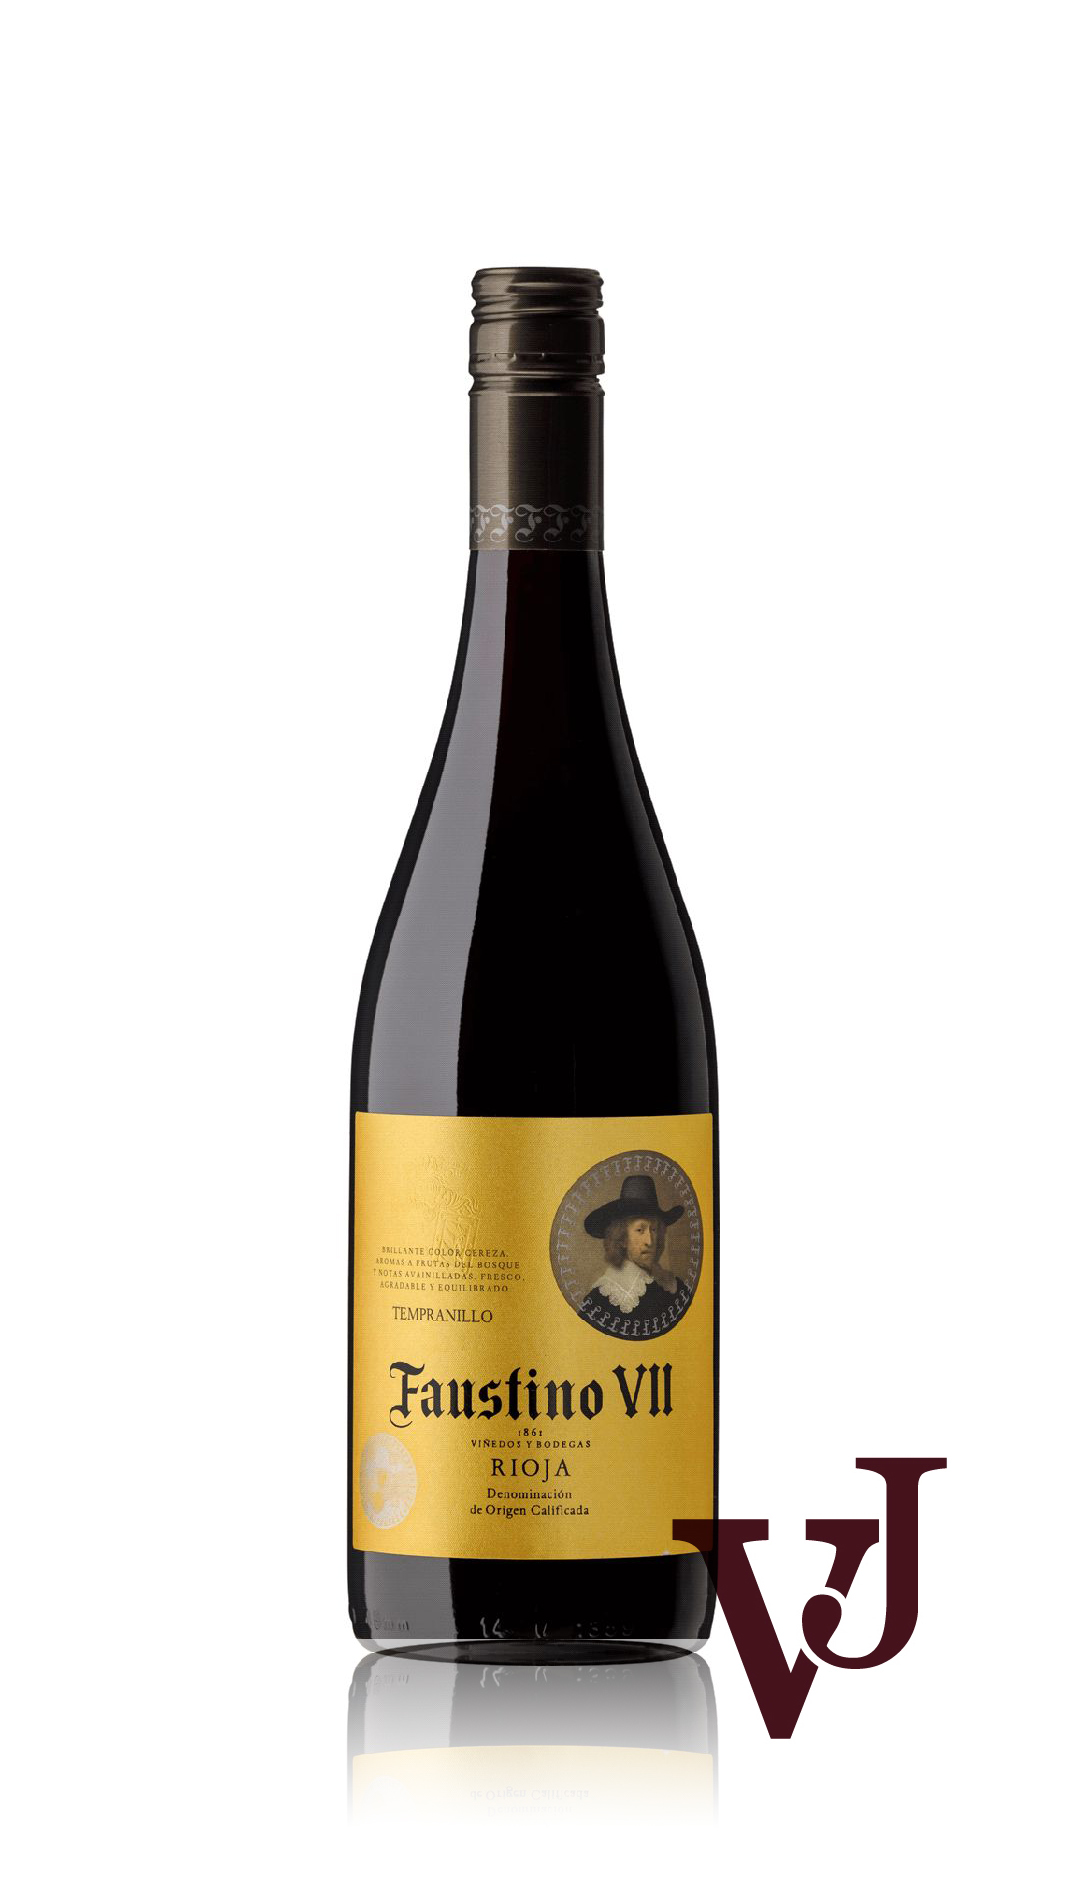 Rött Vin - Faustino VII artikel nummer 2266201 från producenten Faustino Martínez från området Spanien